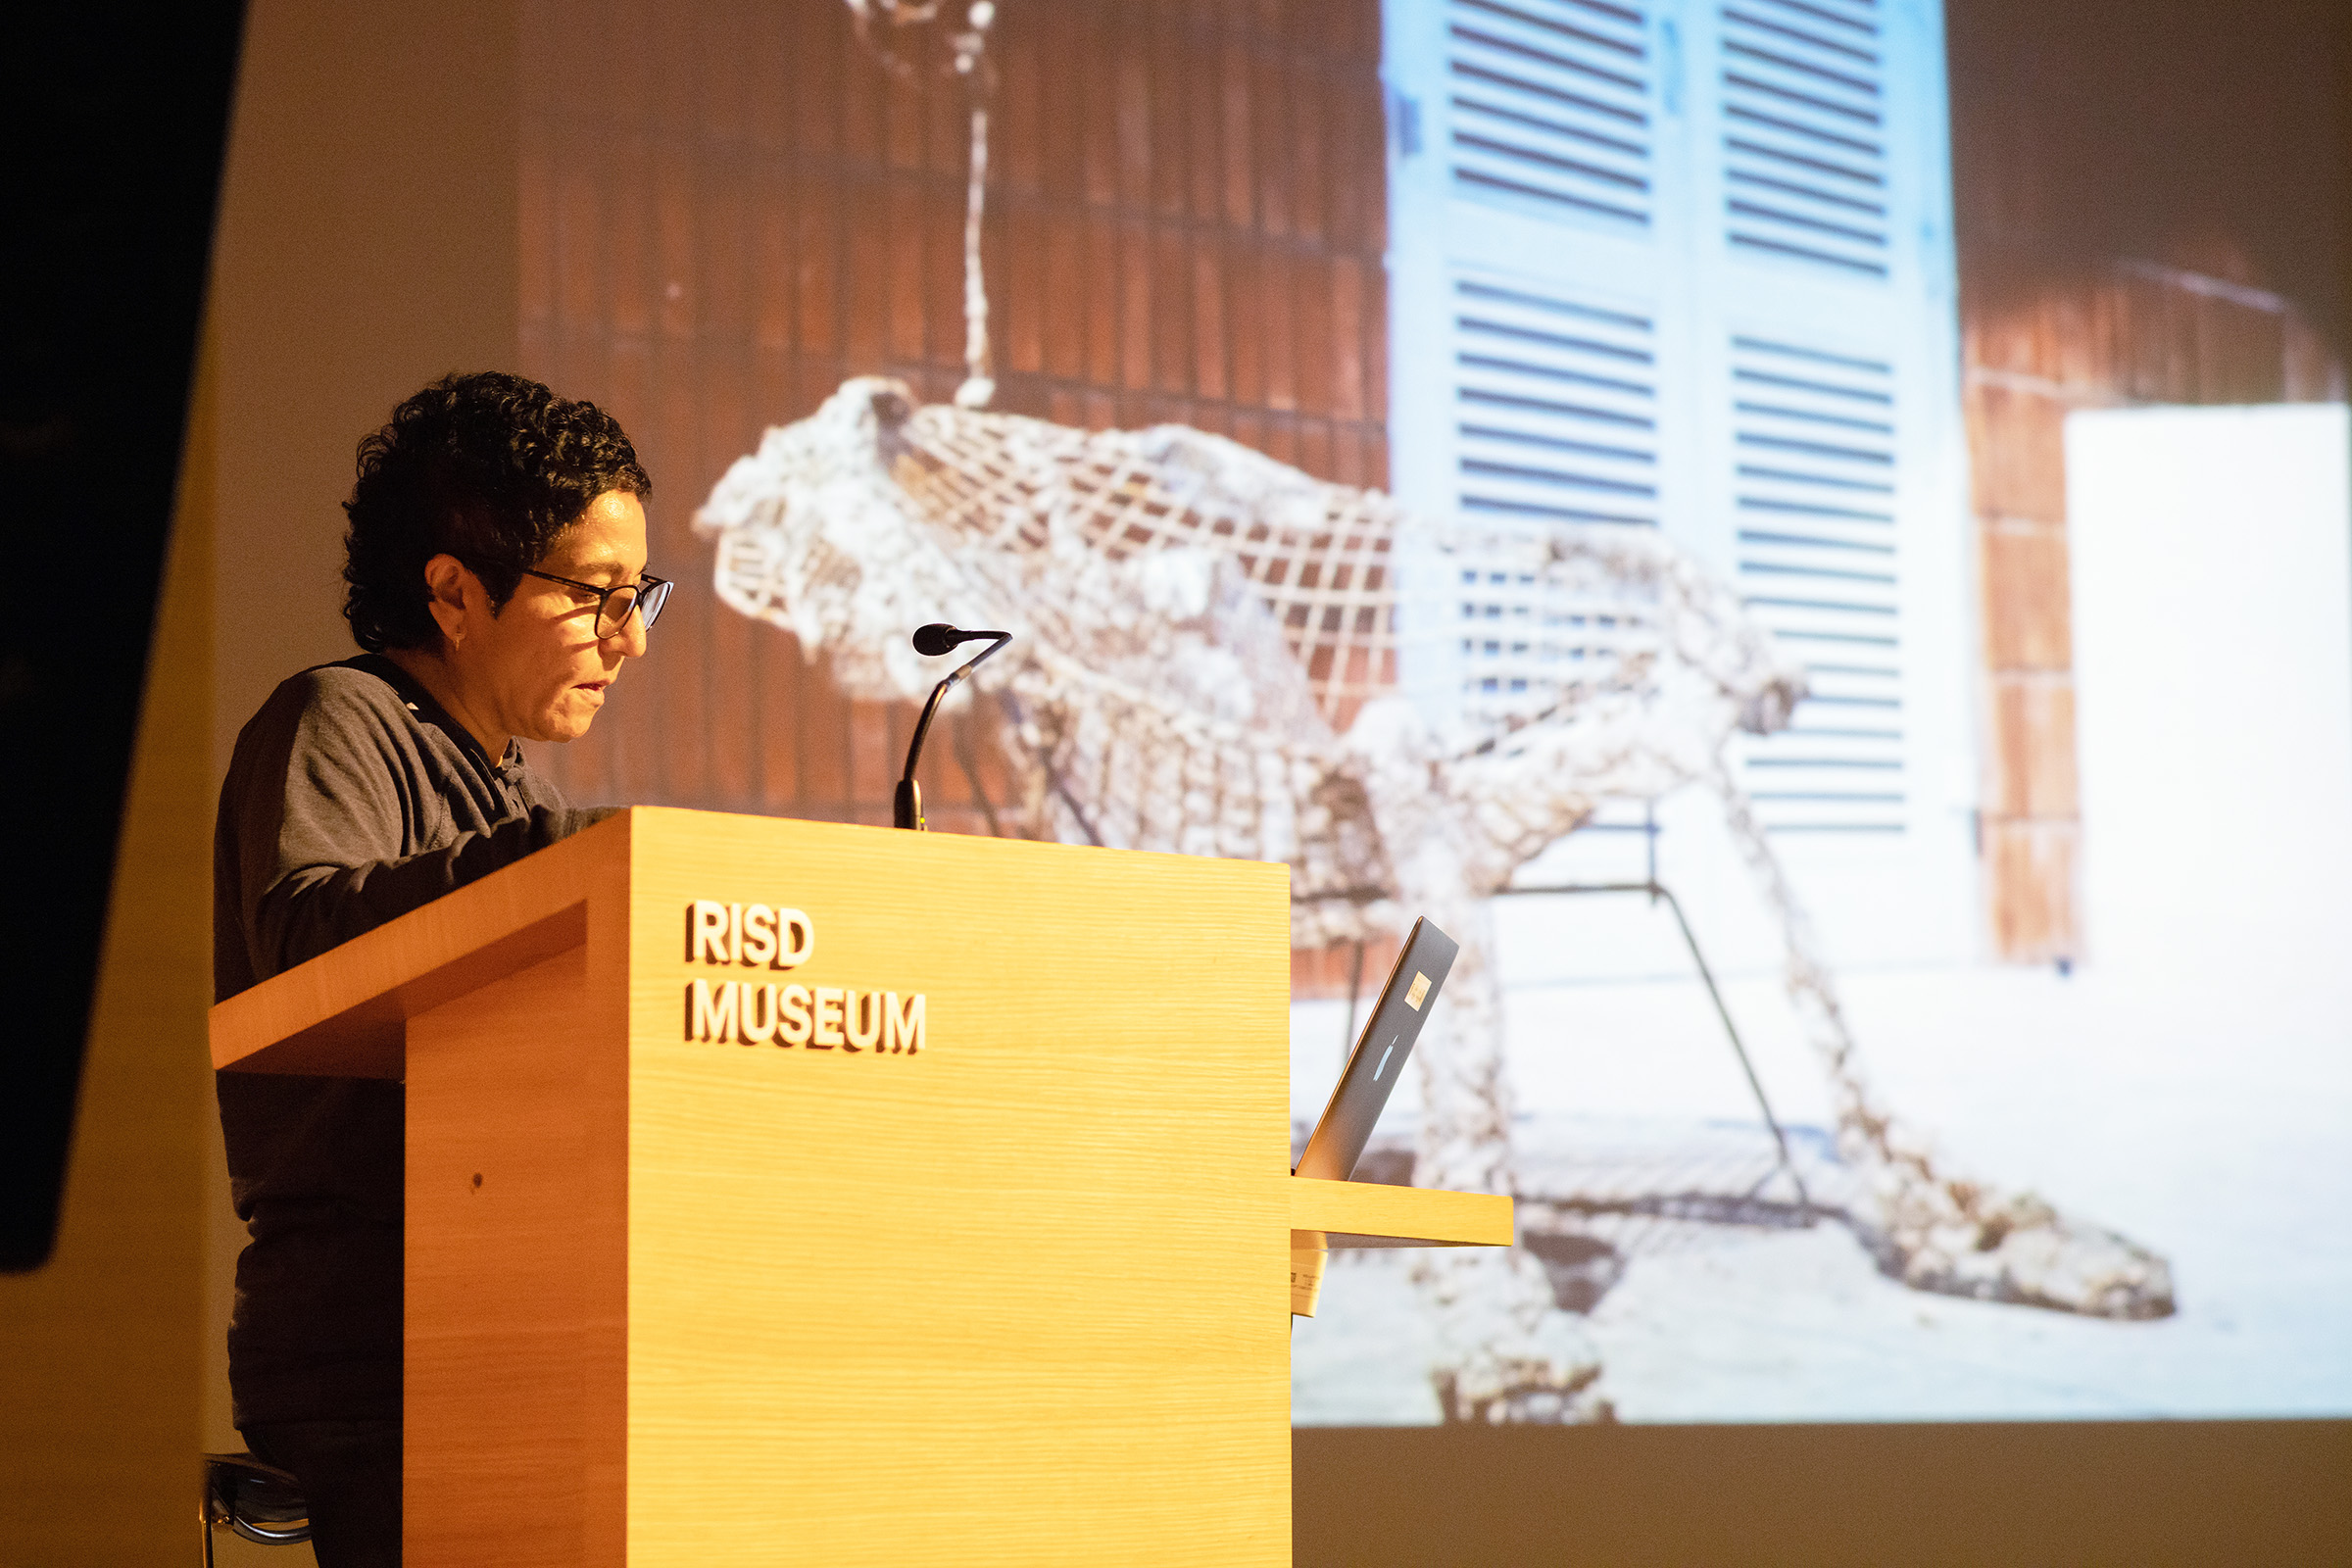 Bhabha at the podium in RISD's Metcalf Auditorium